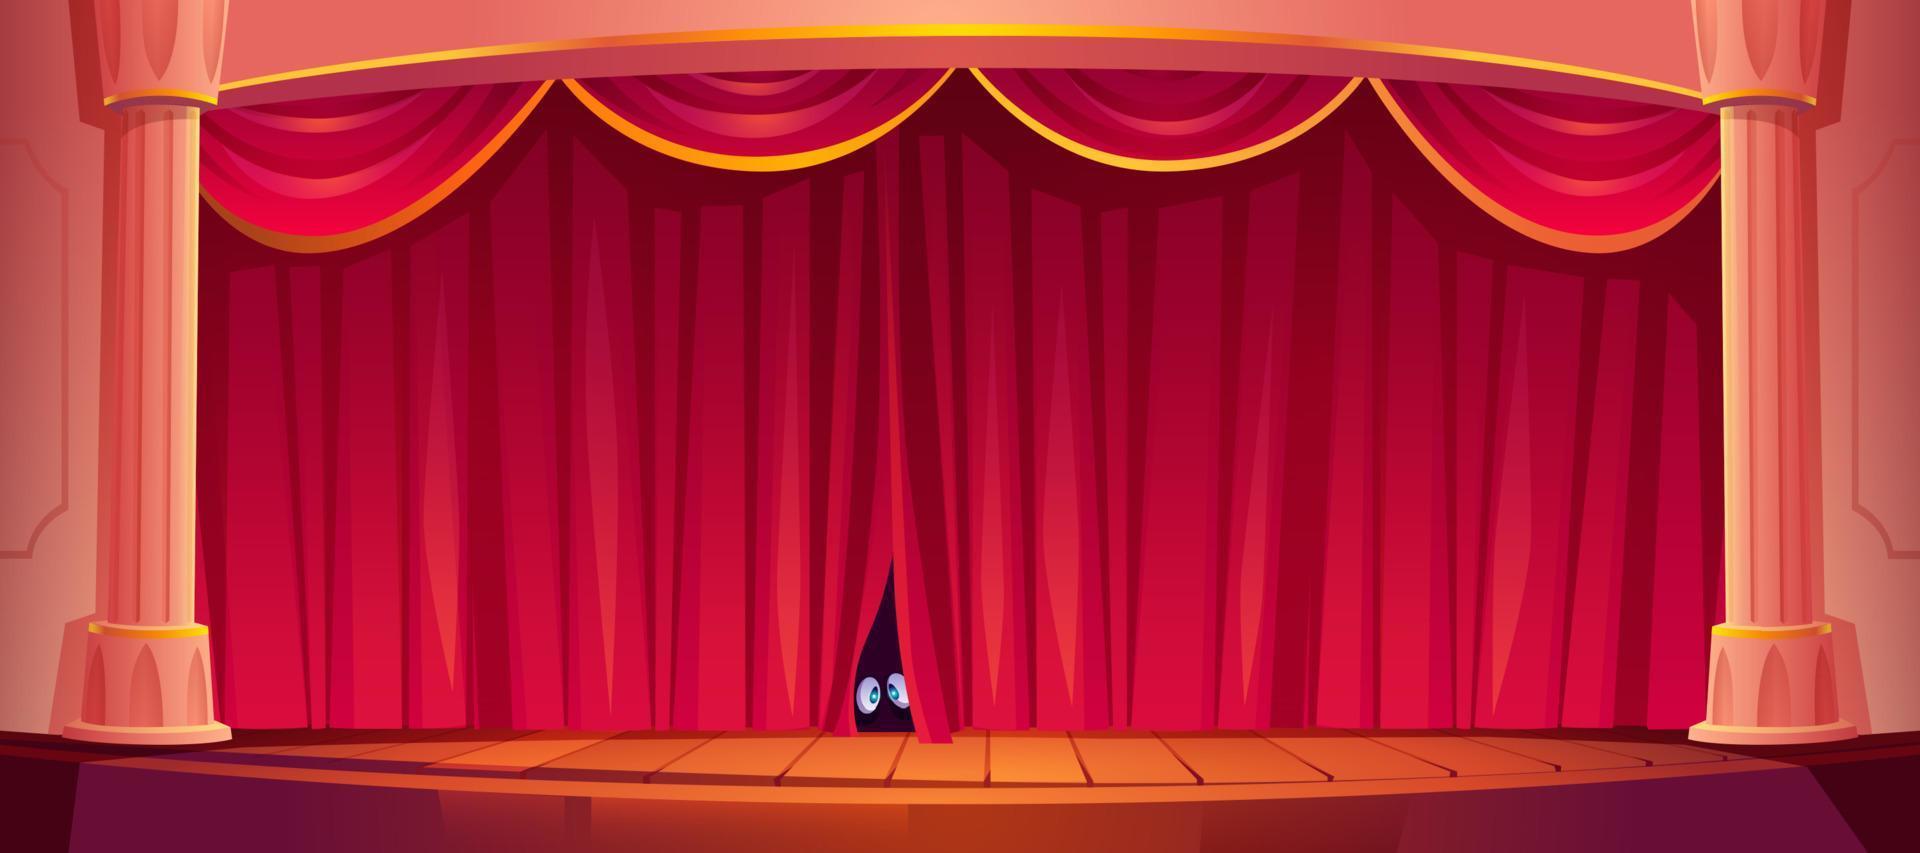 los ojos miran la cortina roja en el escenario del teatro, vector